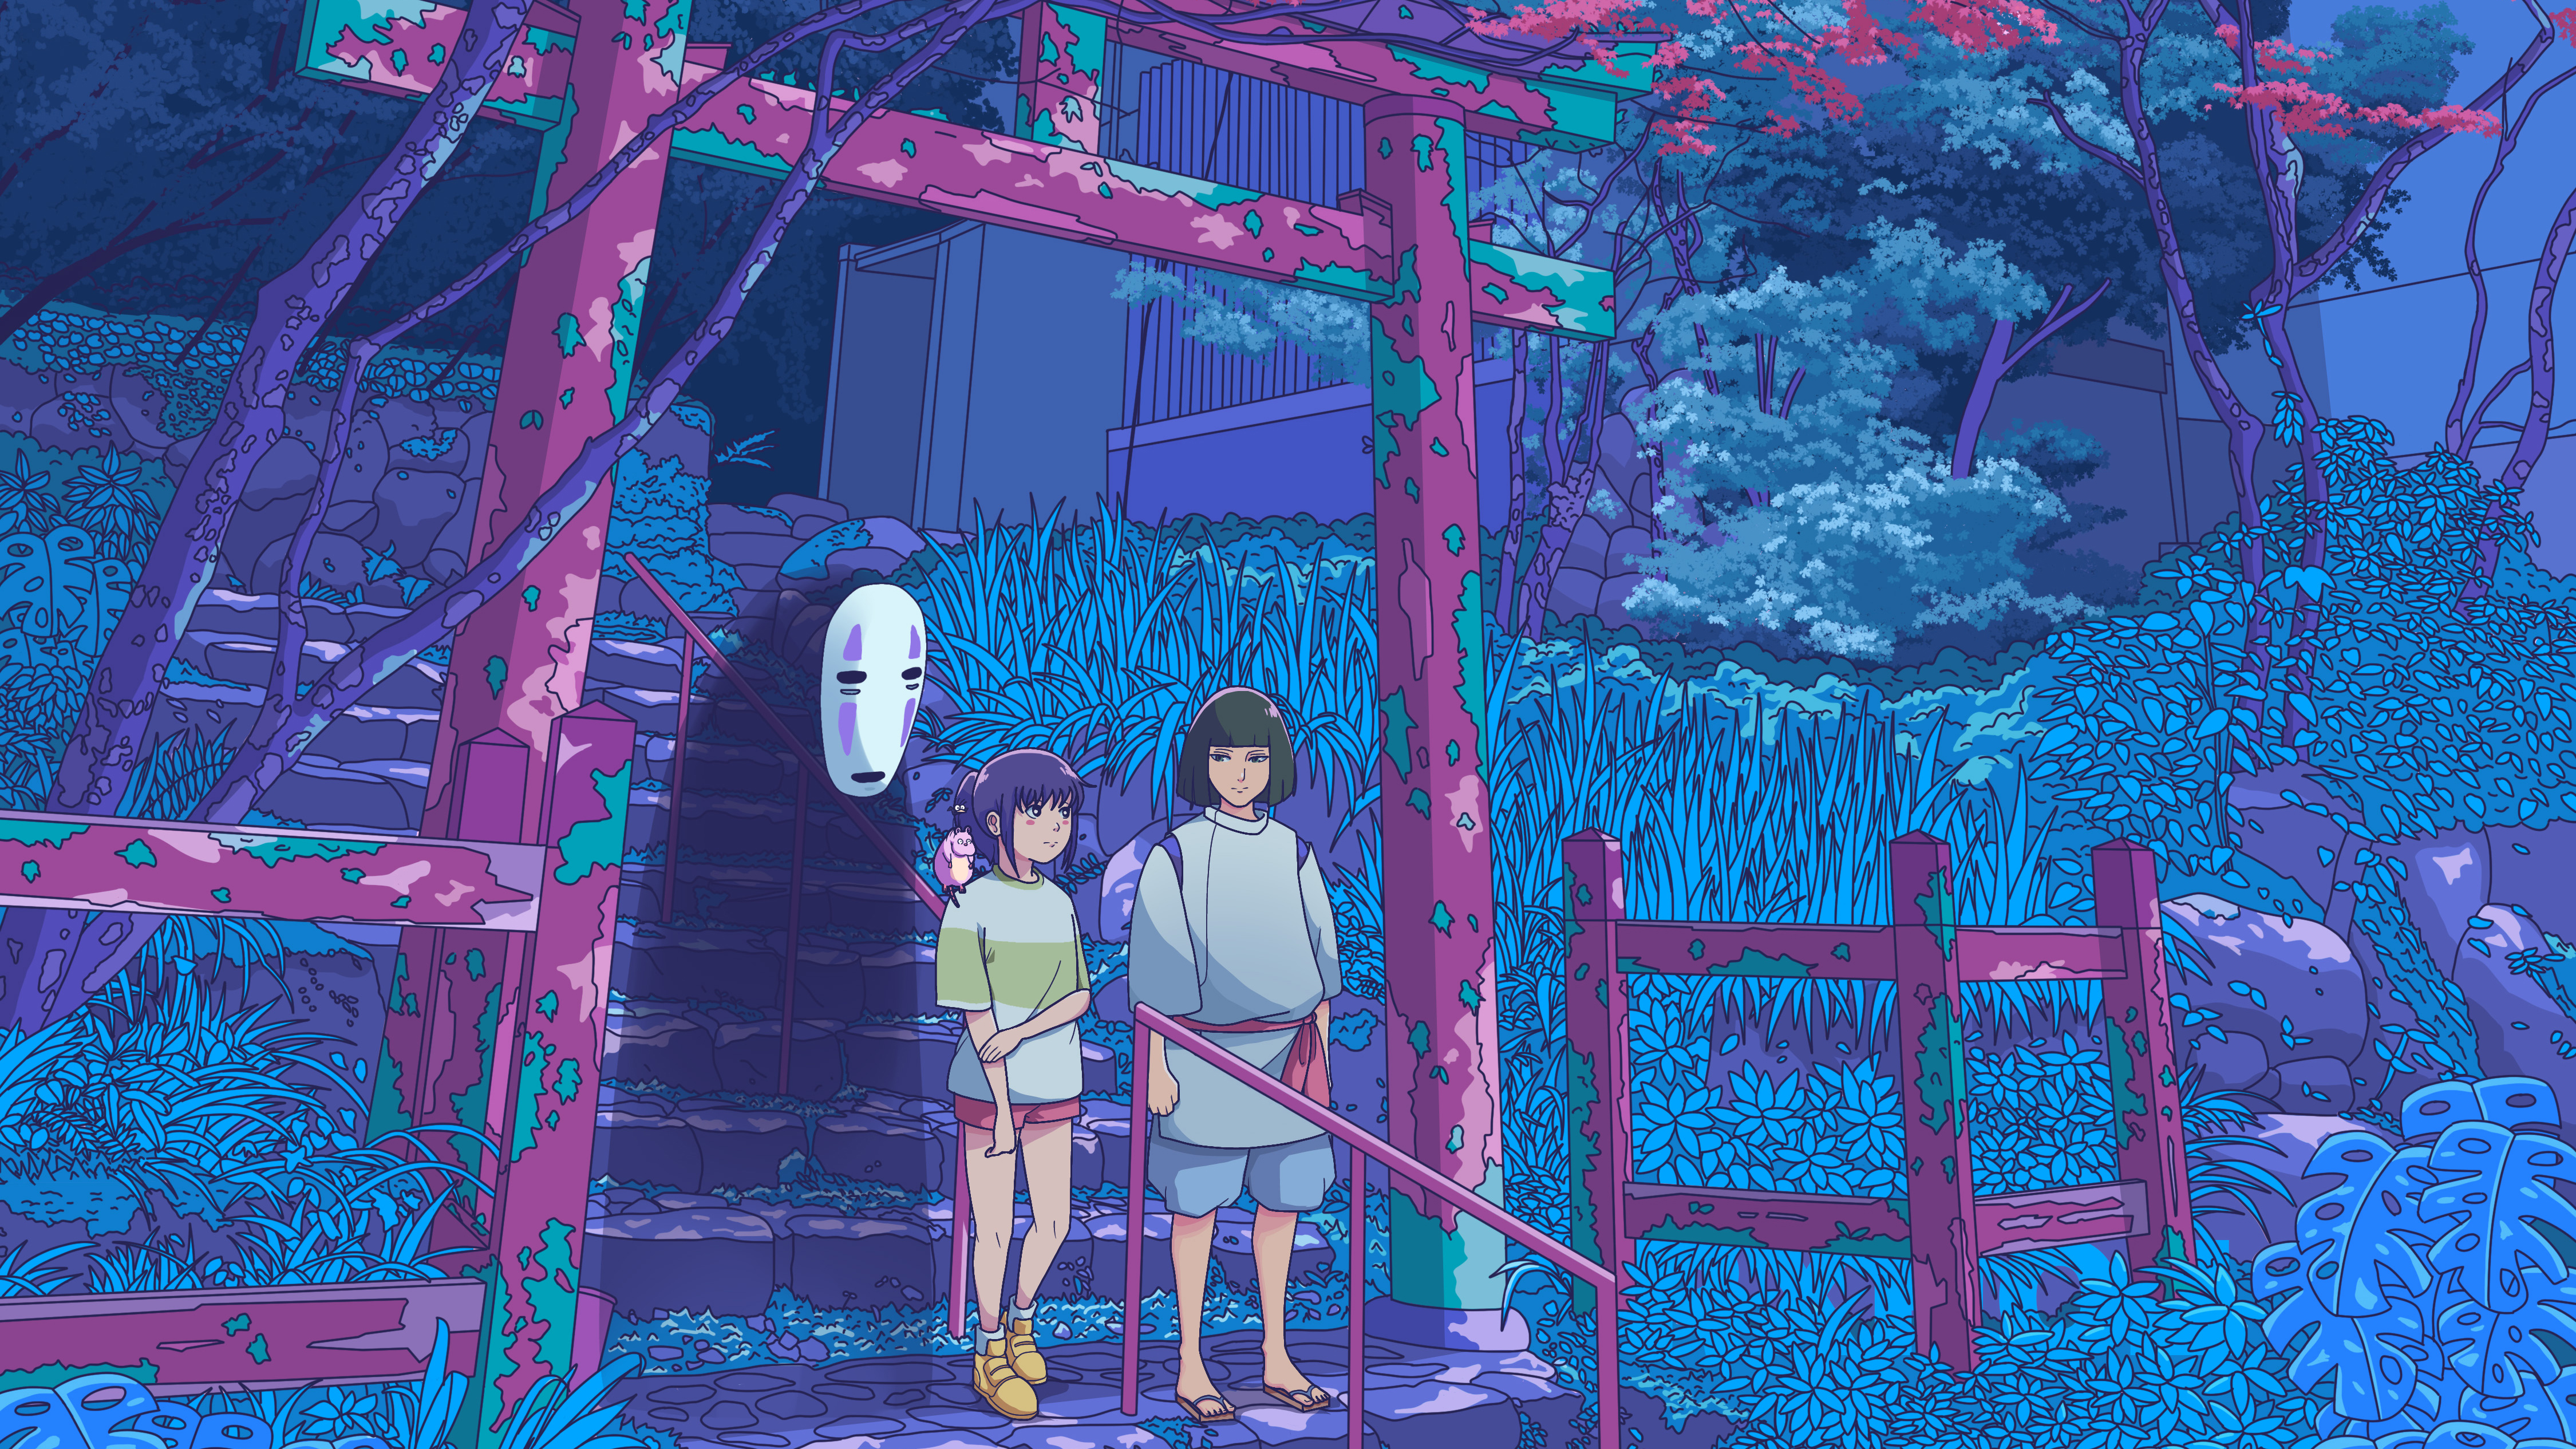 Exhozt Digital Art Artwork Illustration Fan Art Torii Stairs Ghost Anime Anime Girls Anime Men Chihi 4500x2531